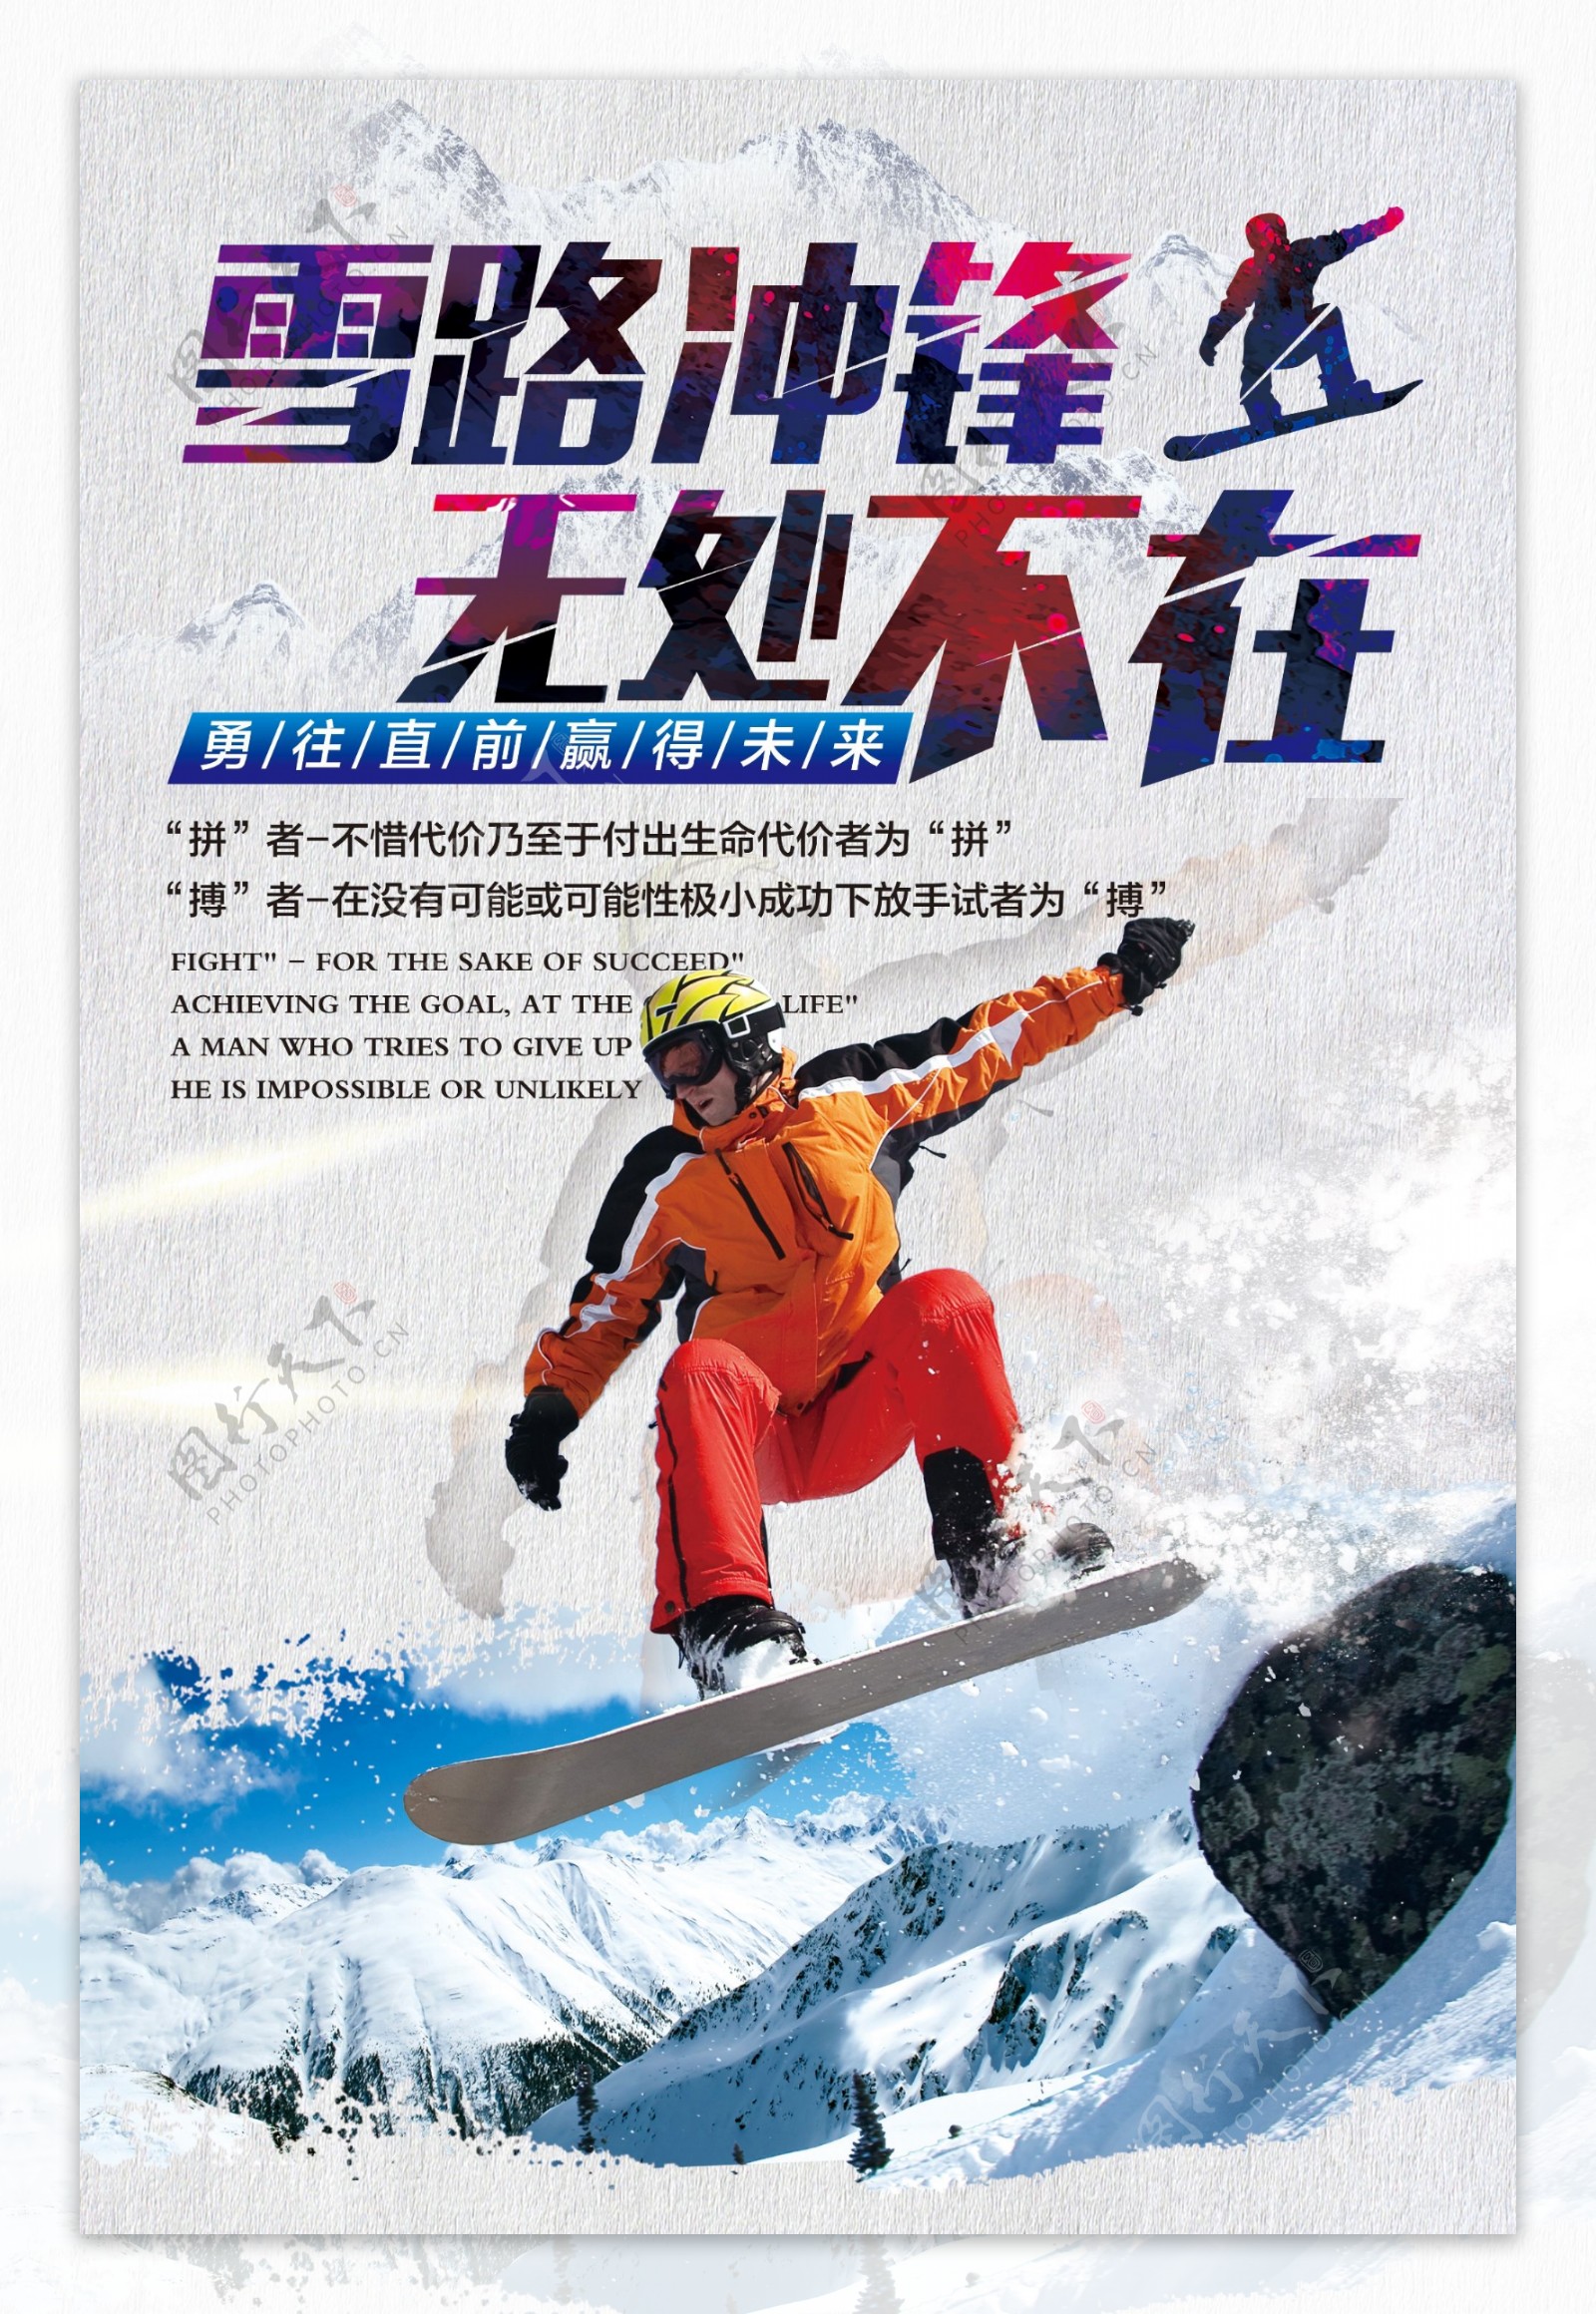 2017滑雪海报设计雪路冲锋无处不在滑雪海波设计时尚高端滑雪活动海波啊设计